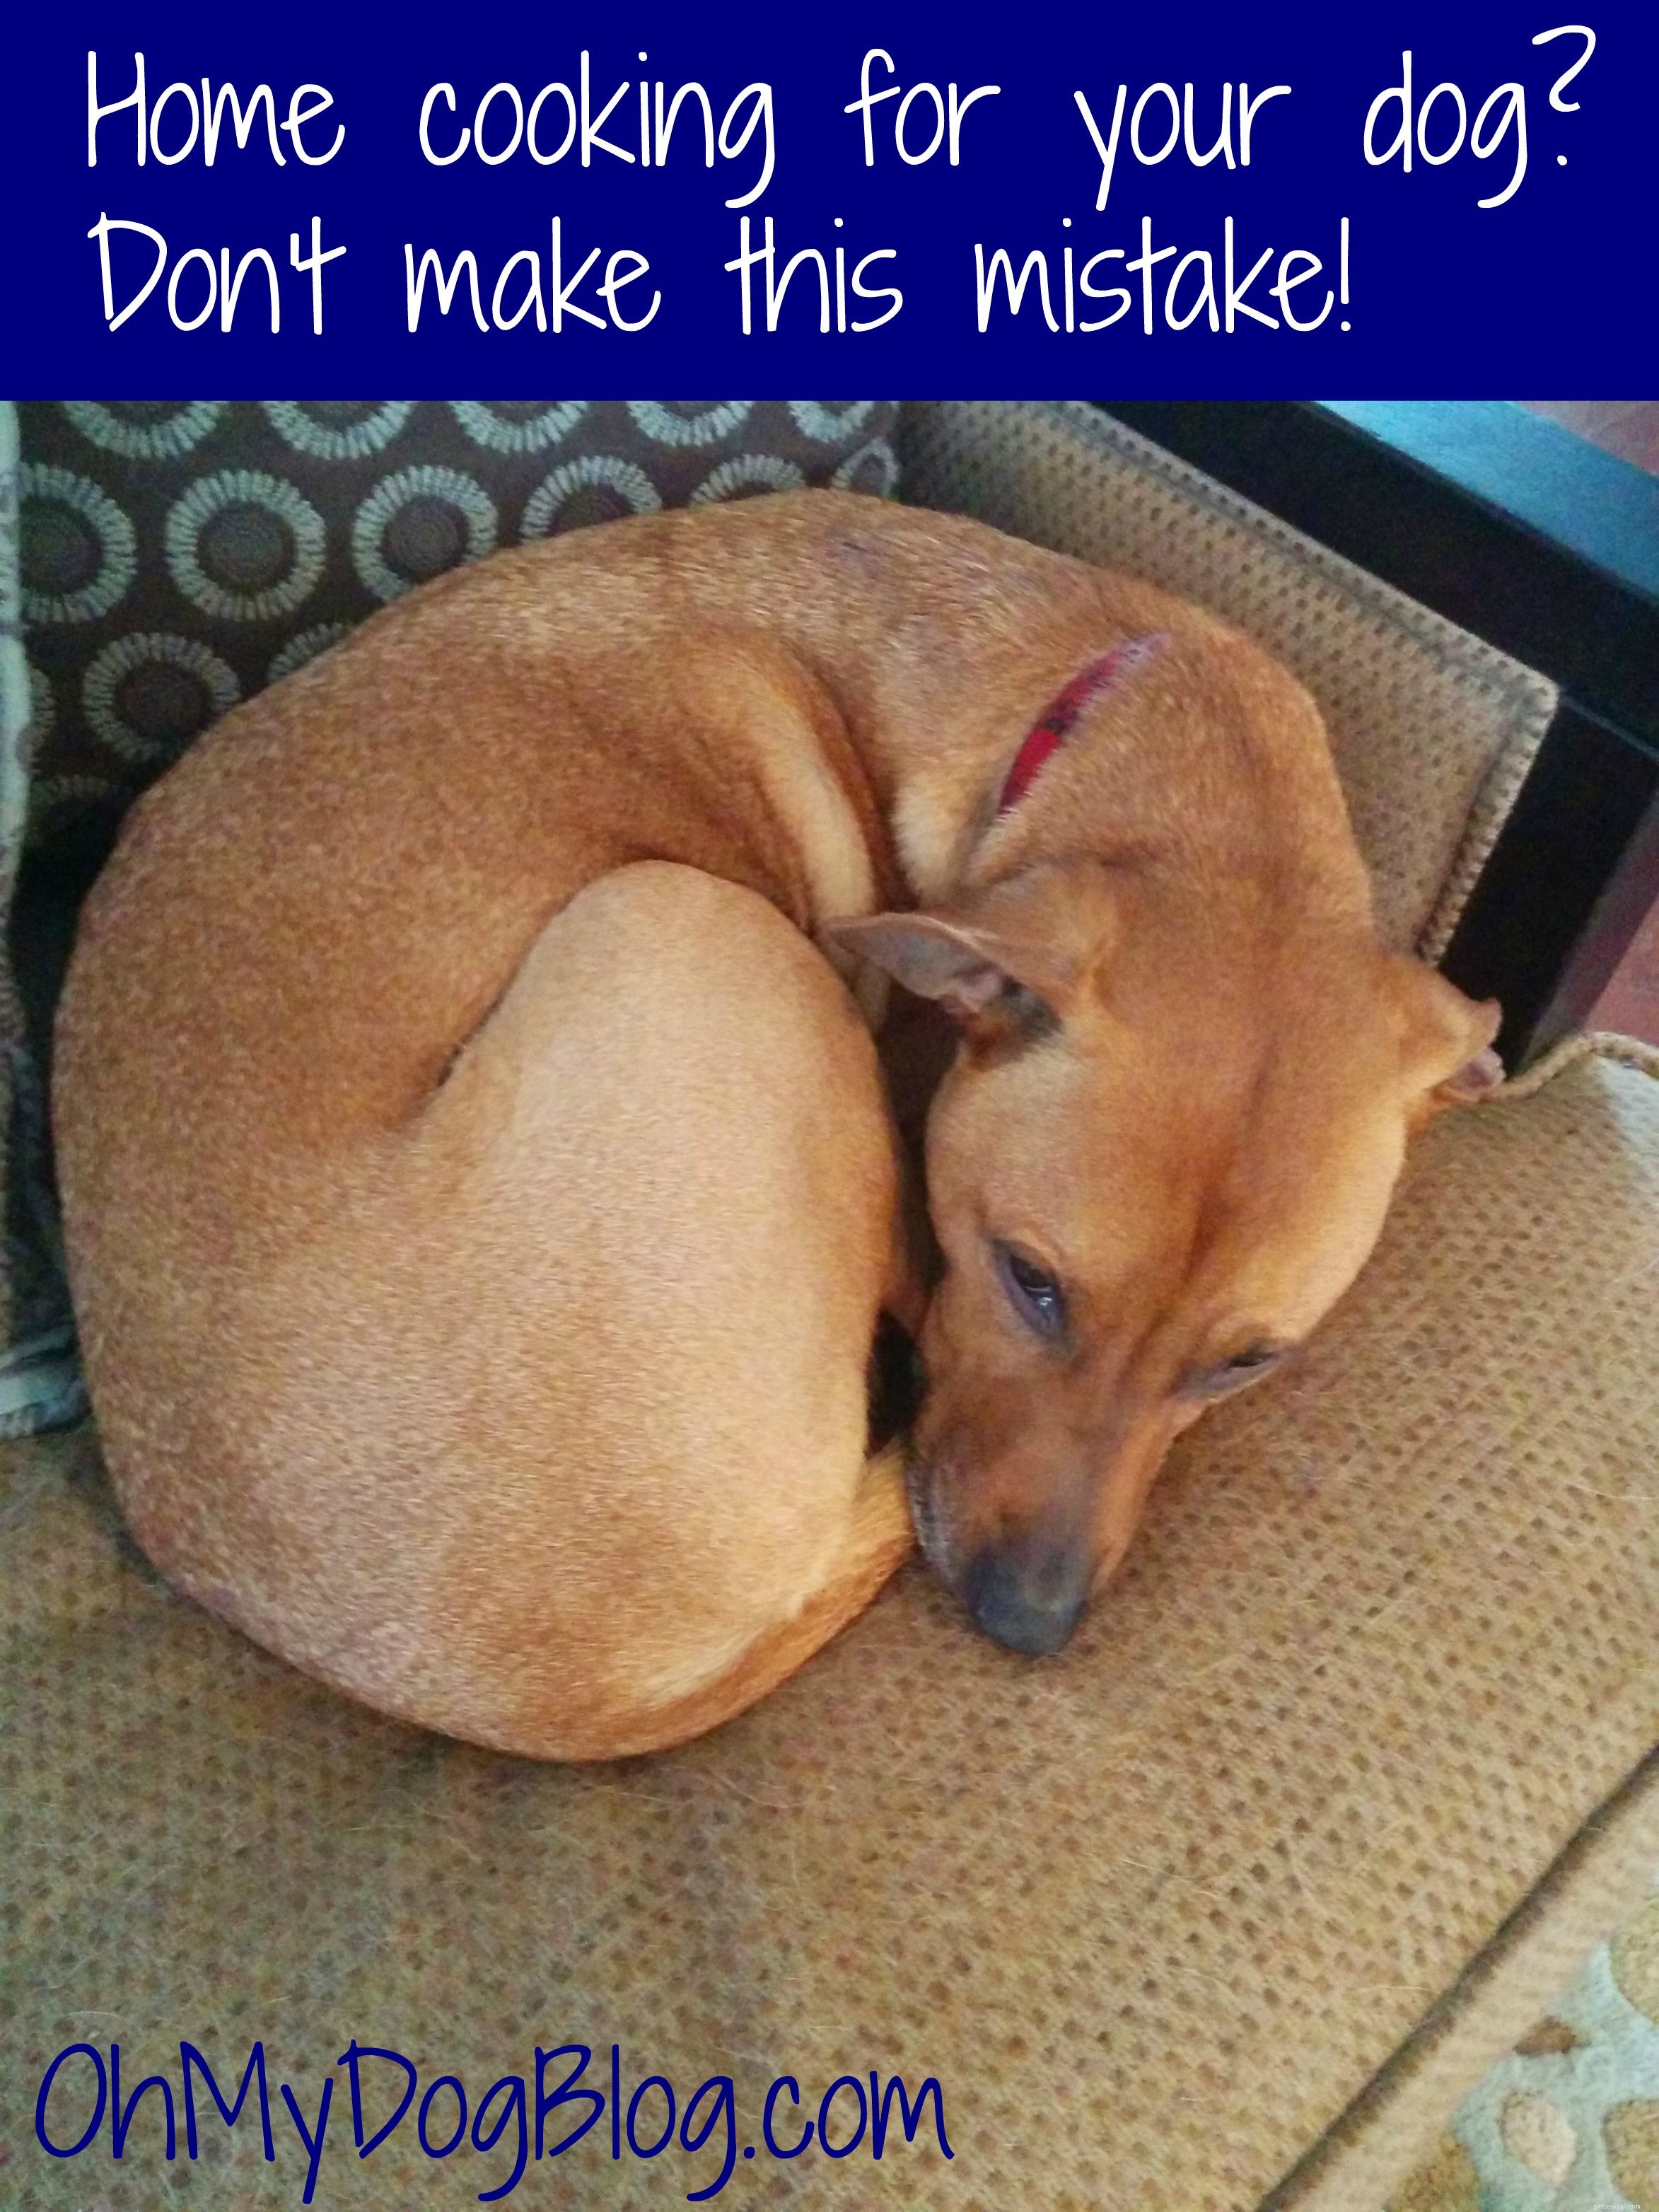 Hemmatlagning till din hund? Gör inte detta misstag! (Det gjorde vi. Skjut.)